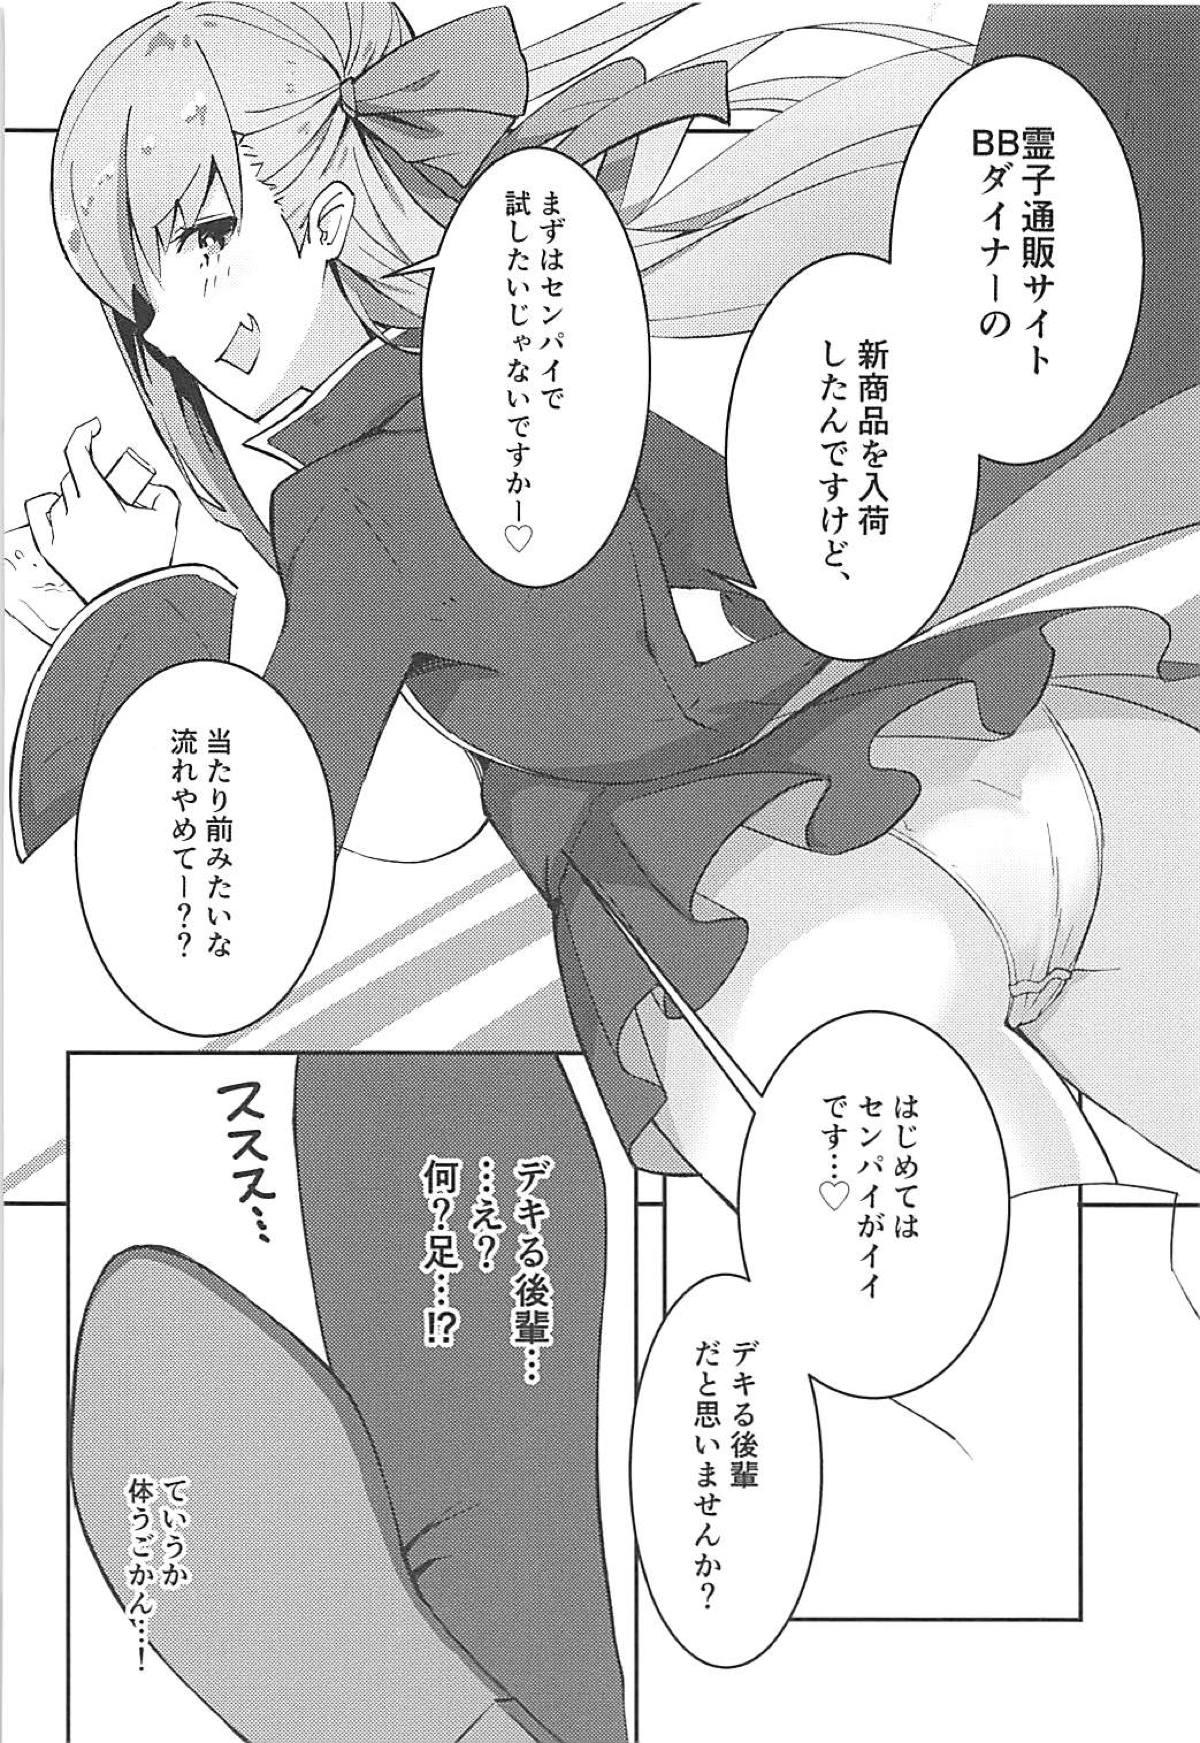 Sextoy Senpai wa BB-chan no Omocha nano desu - Fate grand order Shorts - Page 3